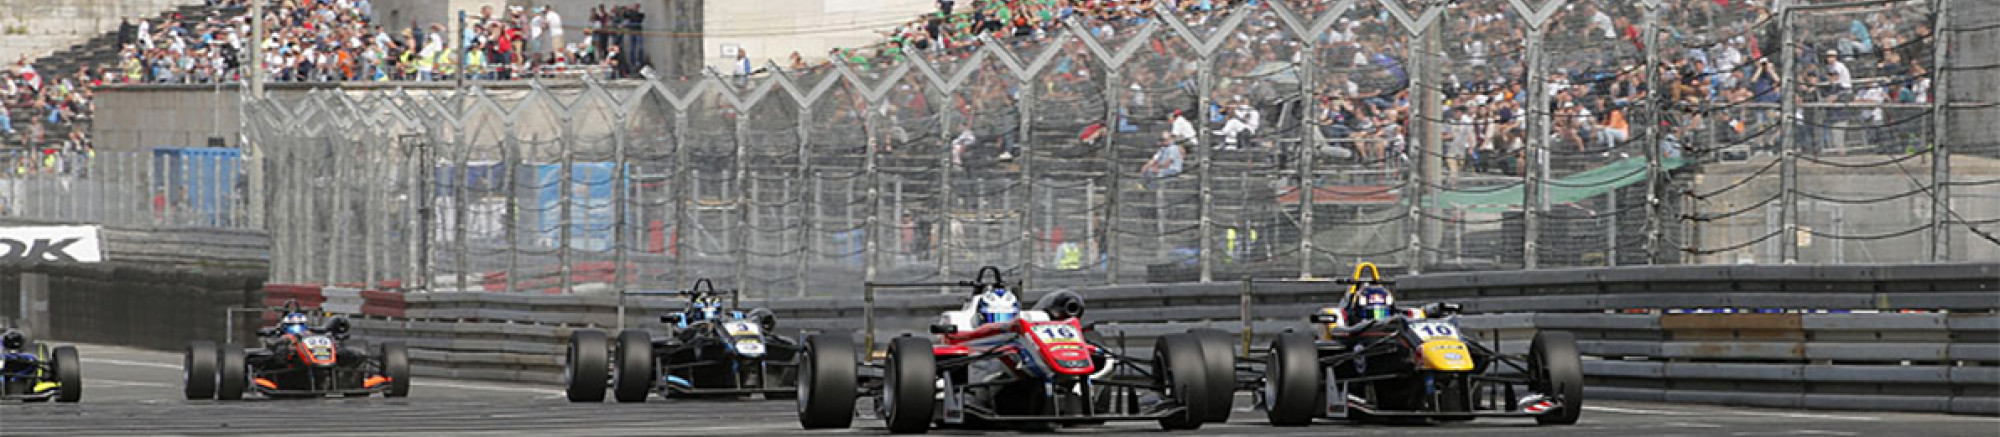 Formula 3, F3, Norisring, Motorsport, FIA